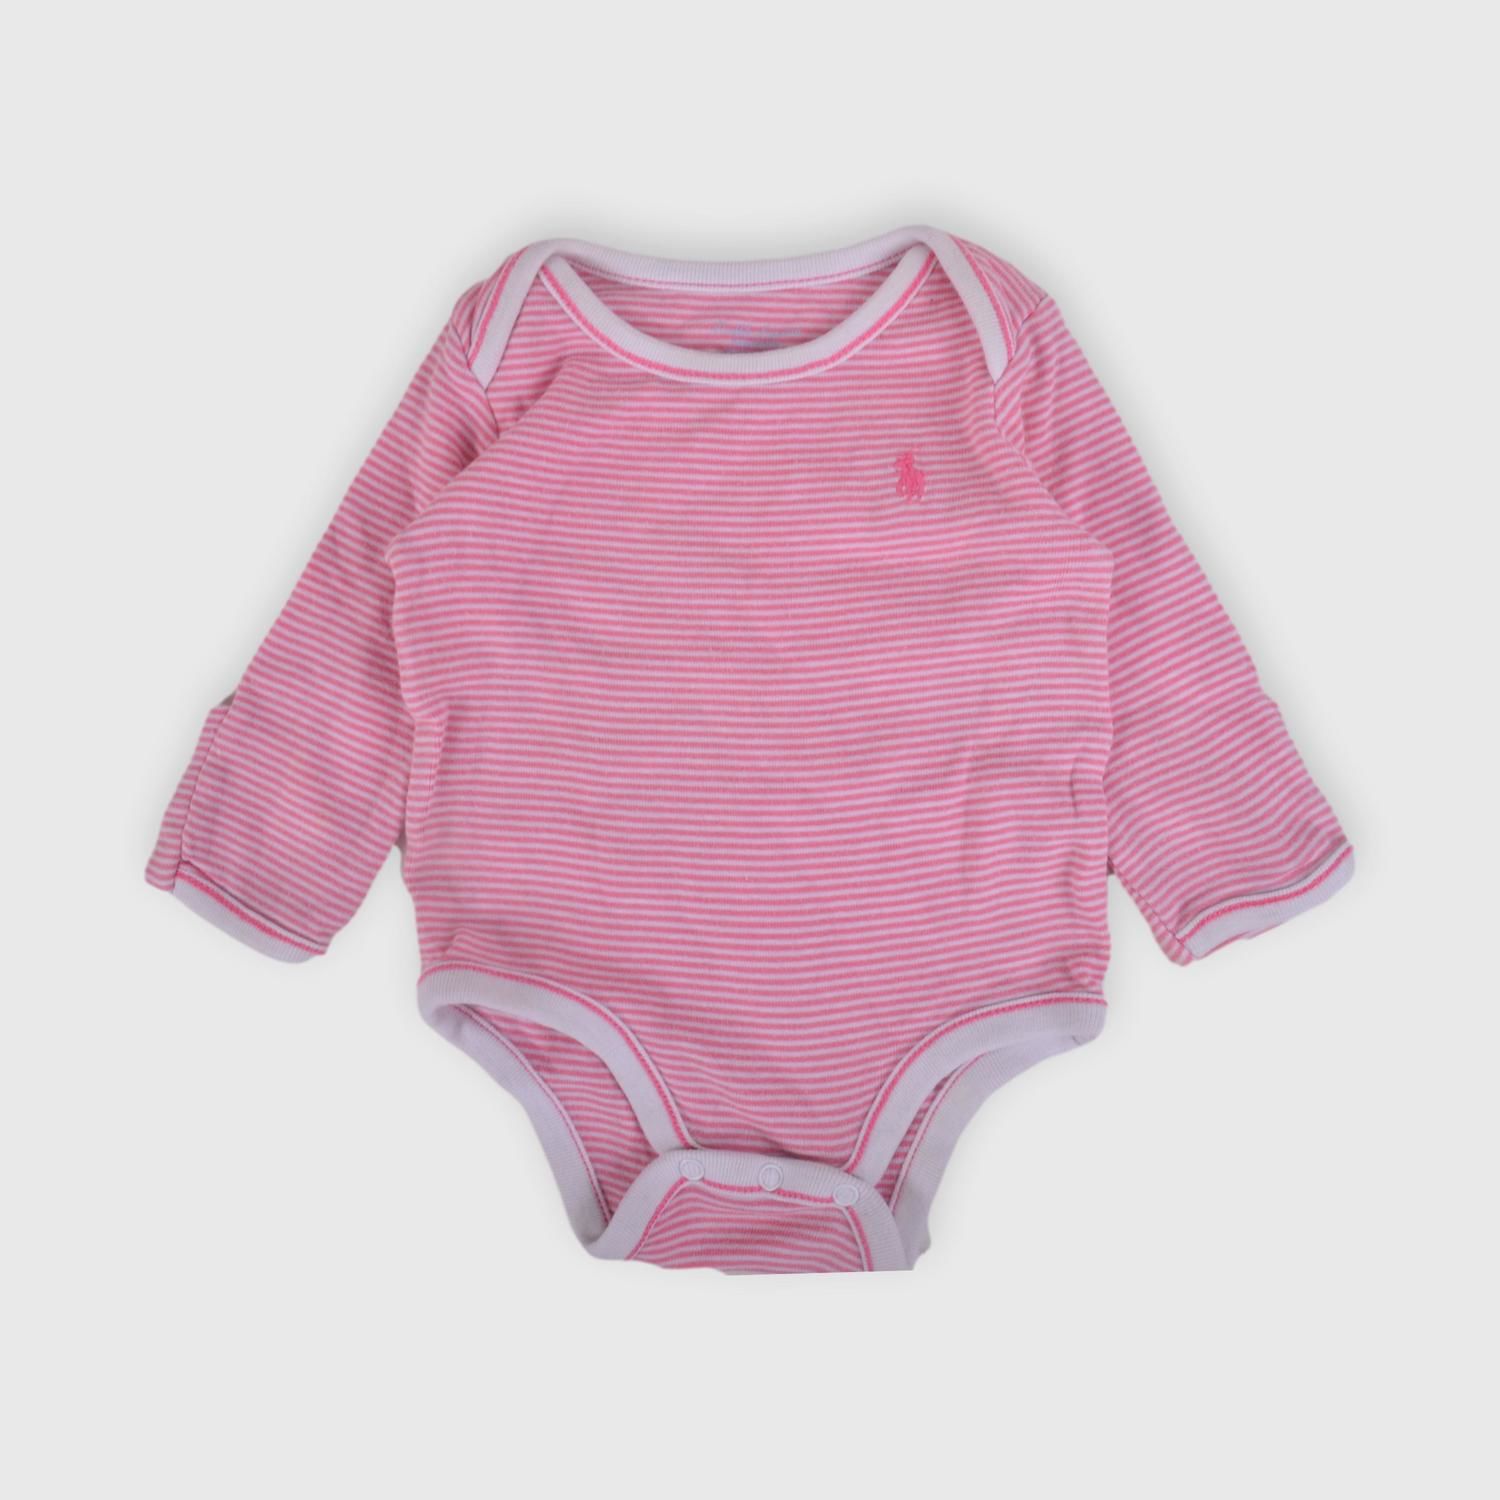 Body Polo Ralph Lauren RN Ronda - Tienda online de ropa de bebés y niños